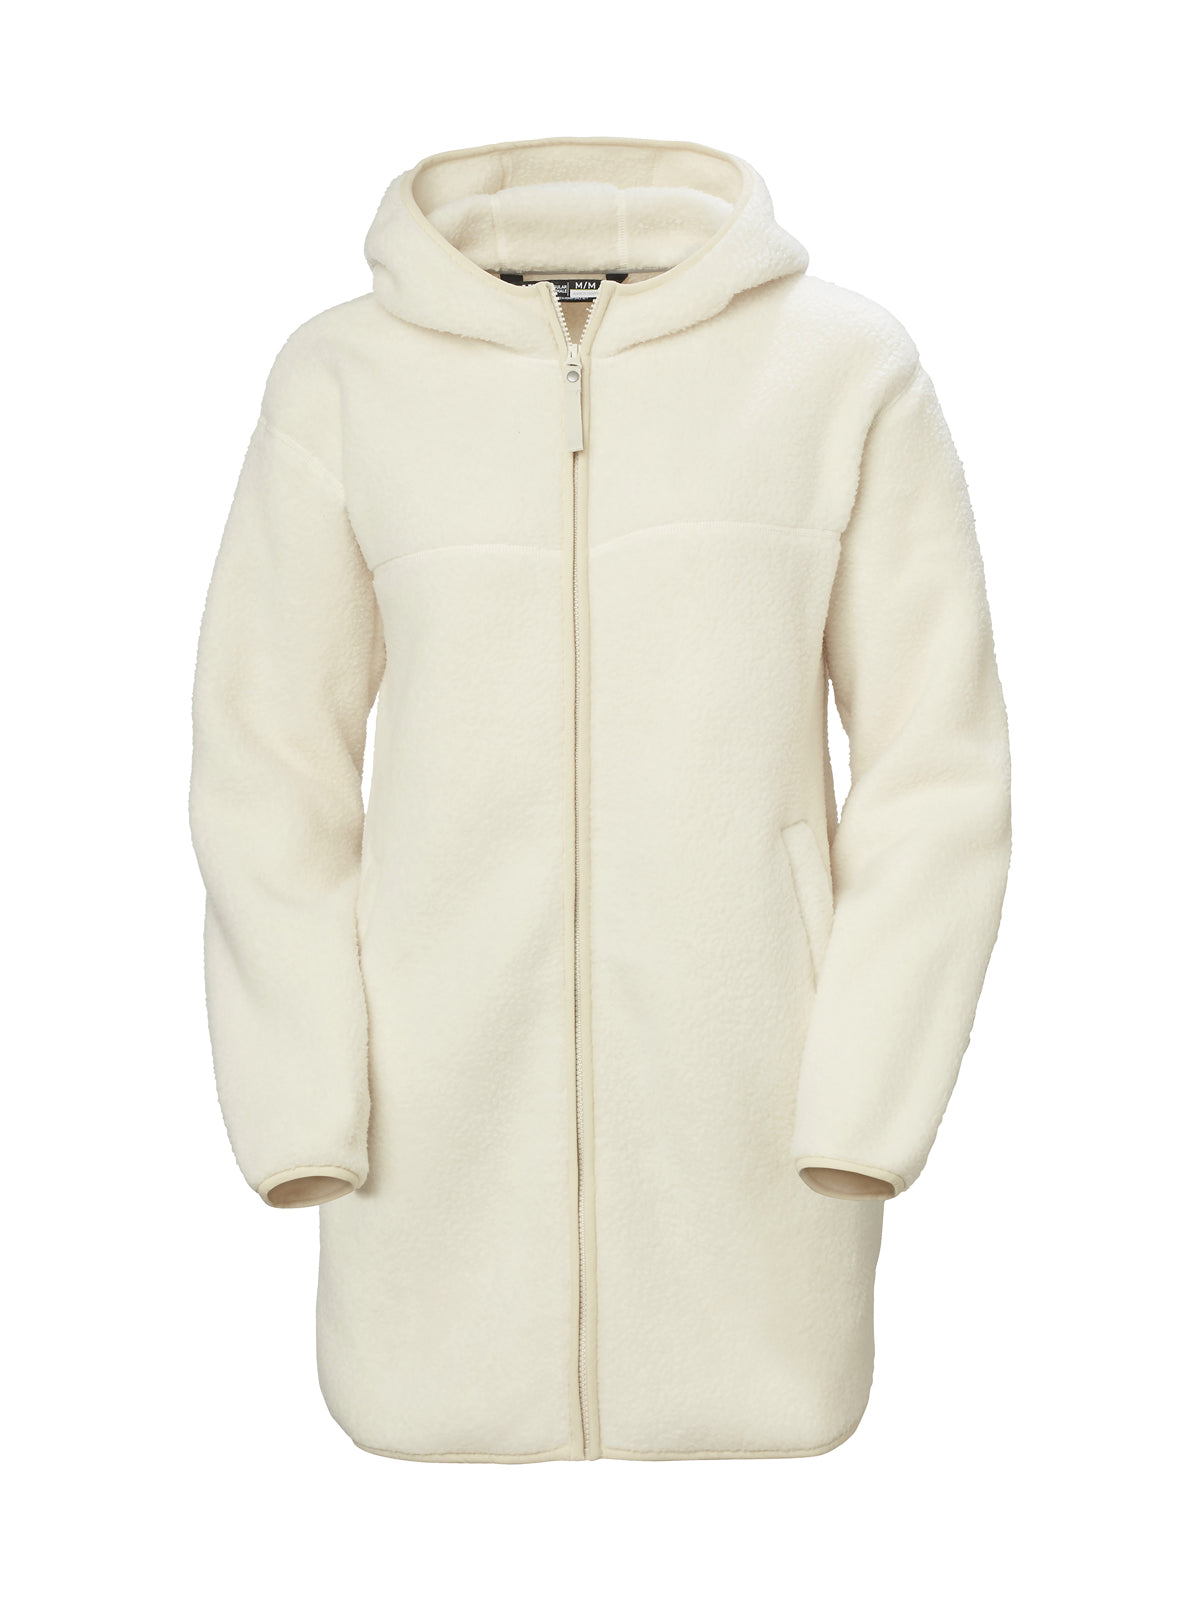 Women’s Maud Pile Fleece Jacket